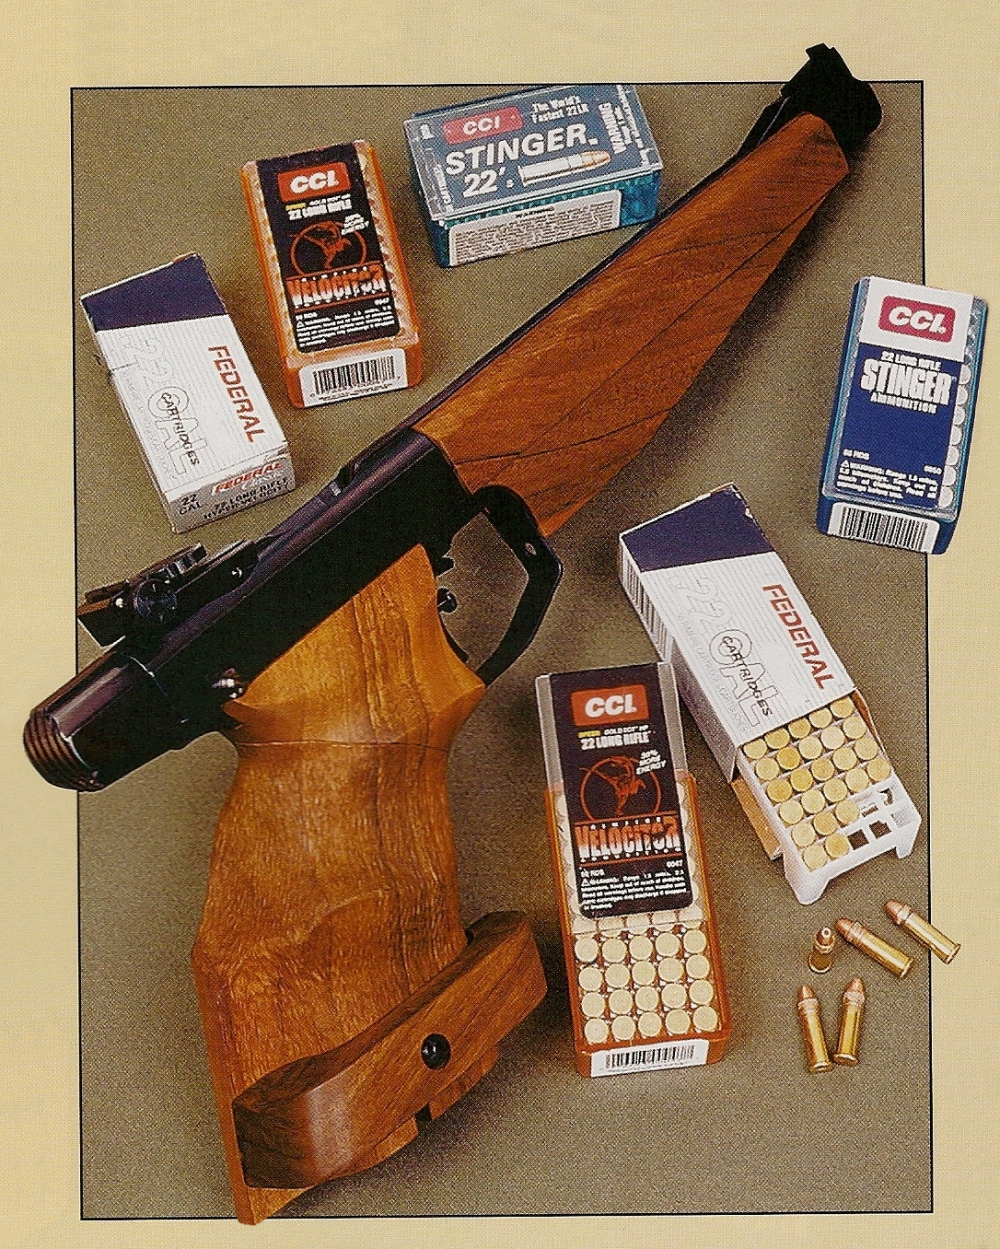 Le pistolet à un coup Drulov modèle 90 utilisé pour les essais, entouré des différentes munitions testées.